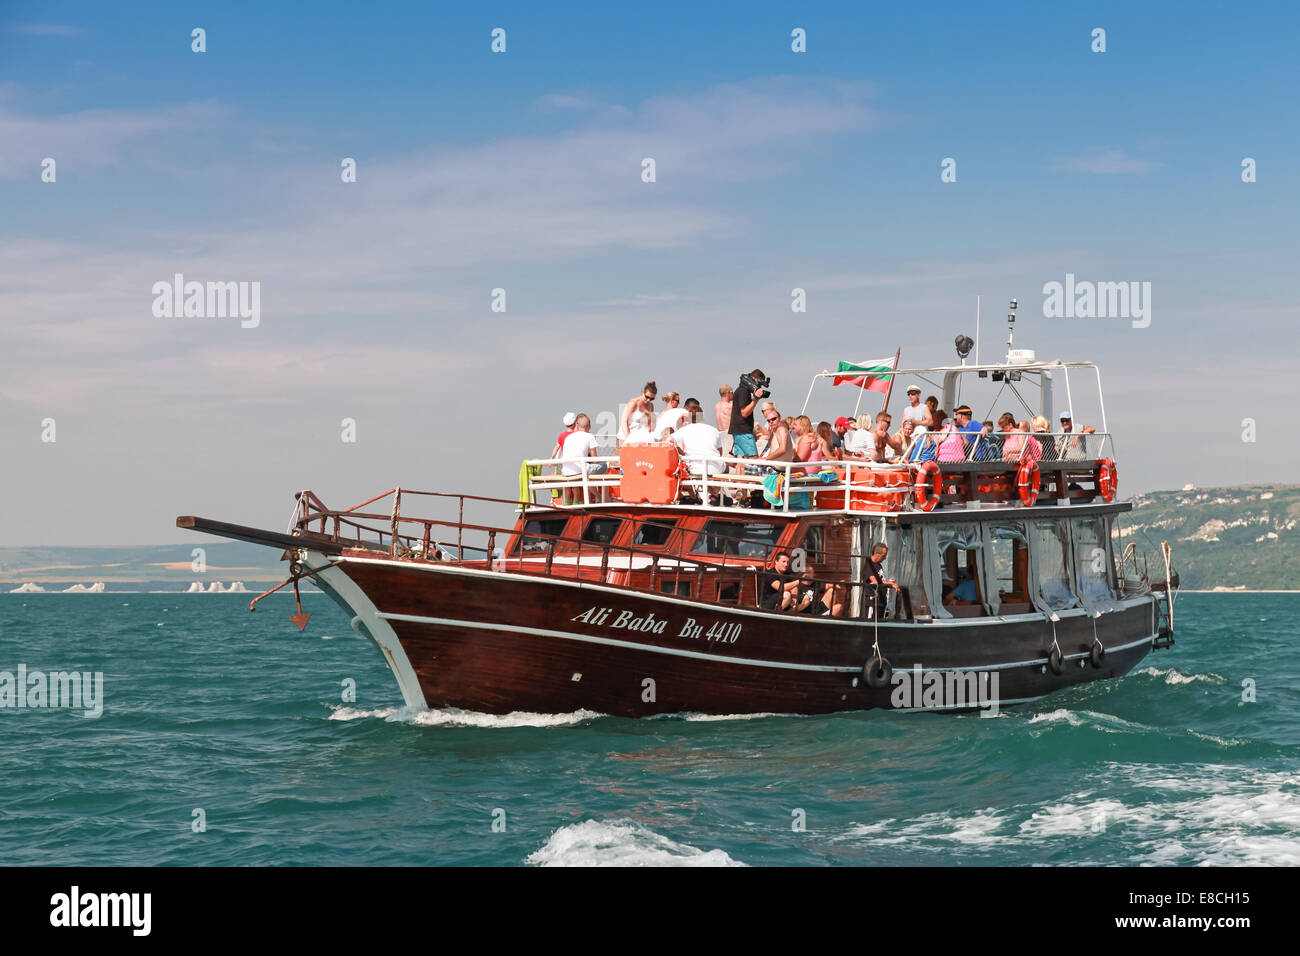 BURGAS, BULGARIE - 18 juillet 2014 : bateau de plaisance en bois plein de touristes va sur la mer Noire dans la baie de Burgas, Bulgarie Banque D'Images